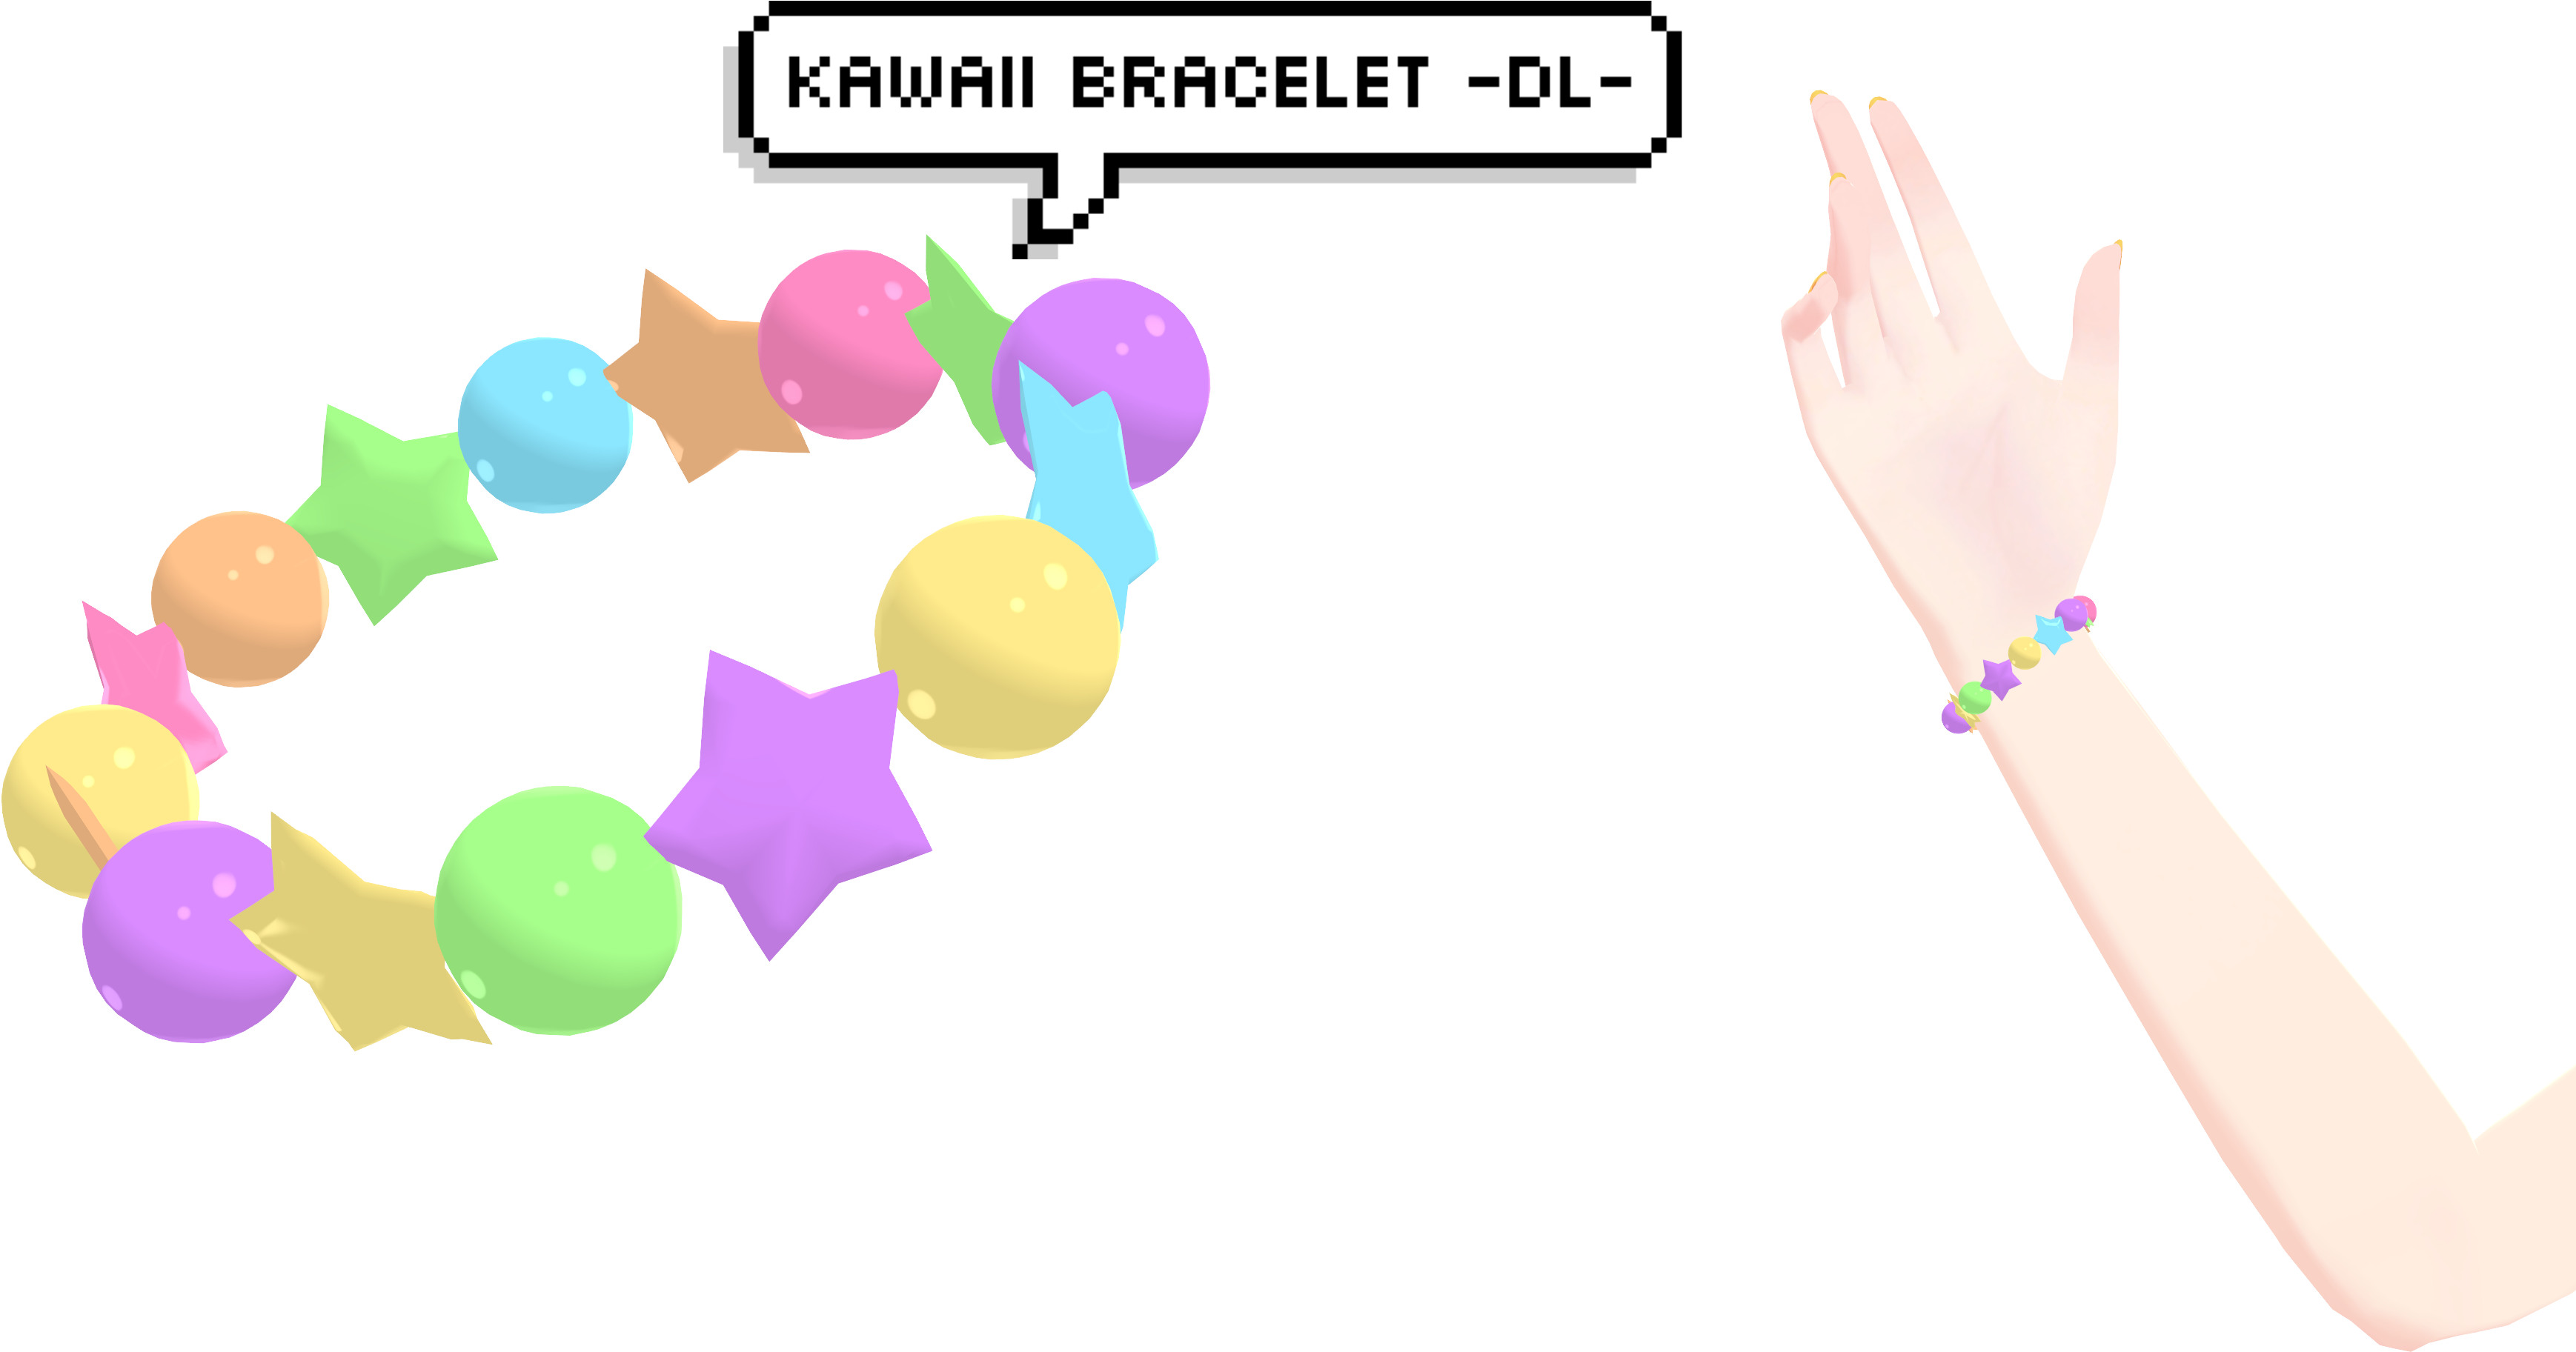 [mmd] Kawaii Bracelet Dl By Deidaraisdead - Driver's License (4096x2160)